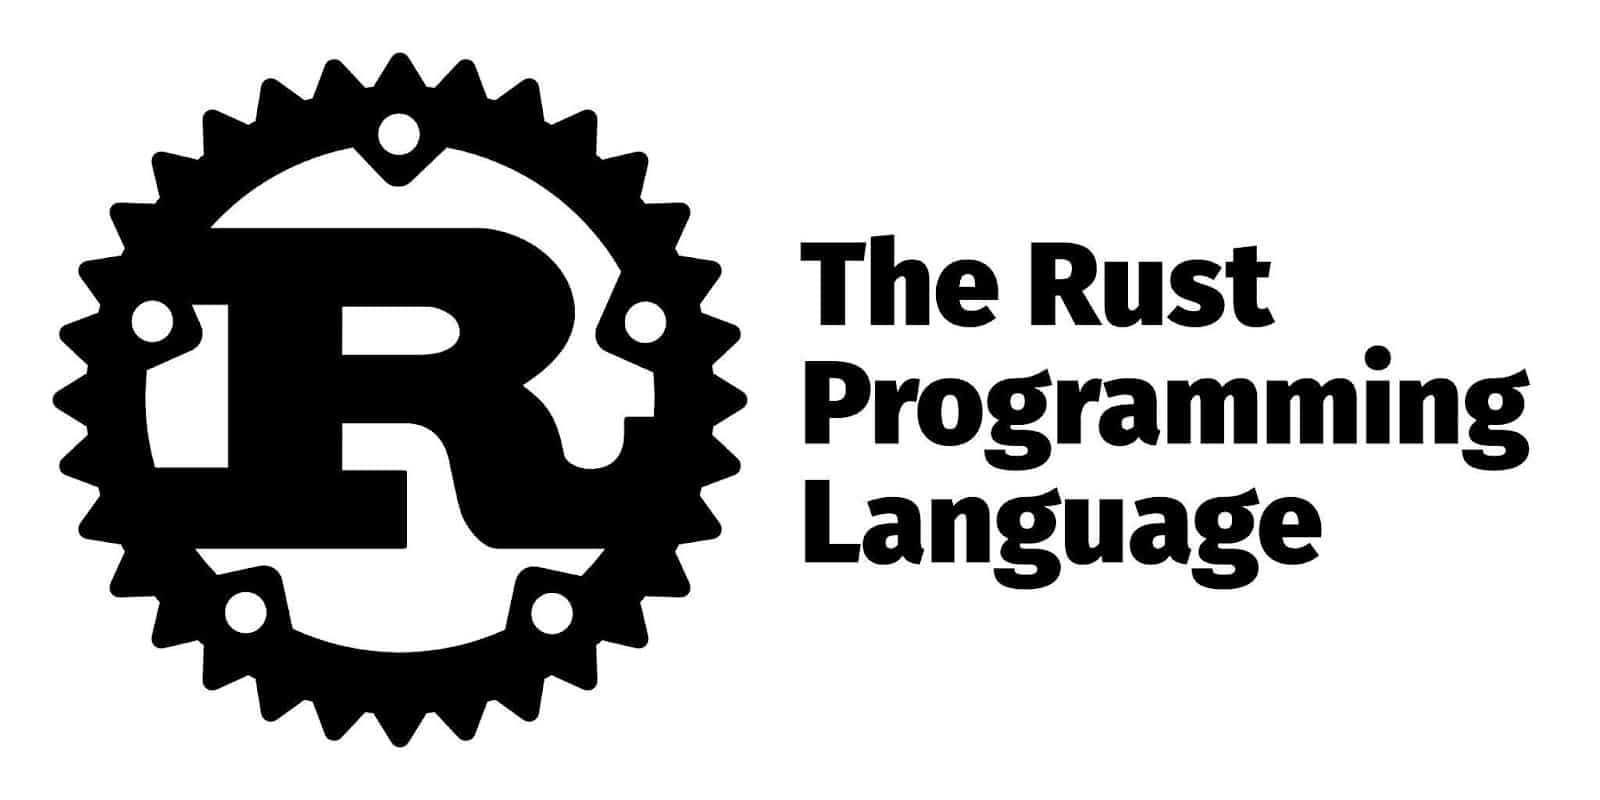 Rust-logoet med navnet med fede bogstaver til højre for billedet.